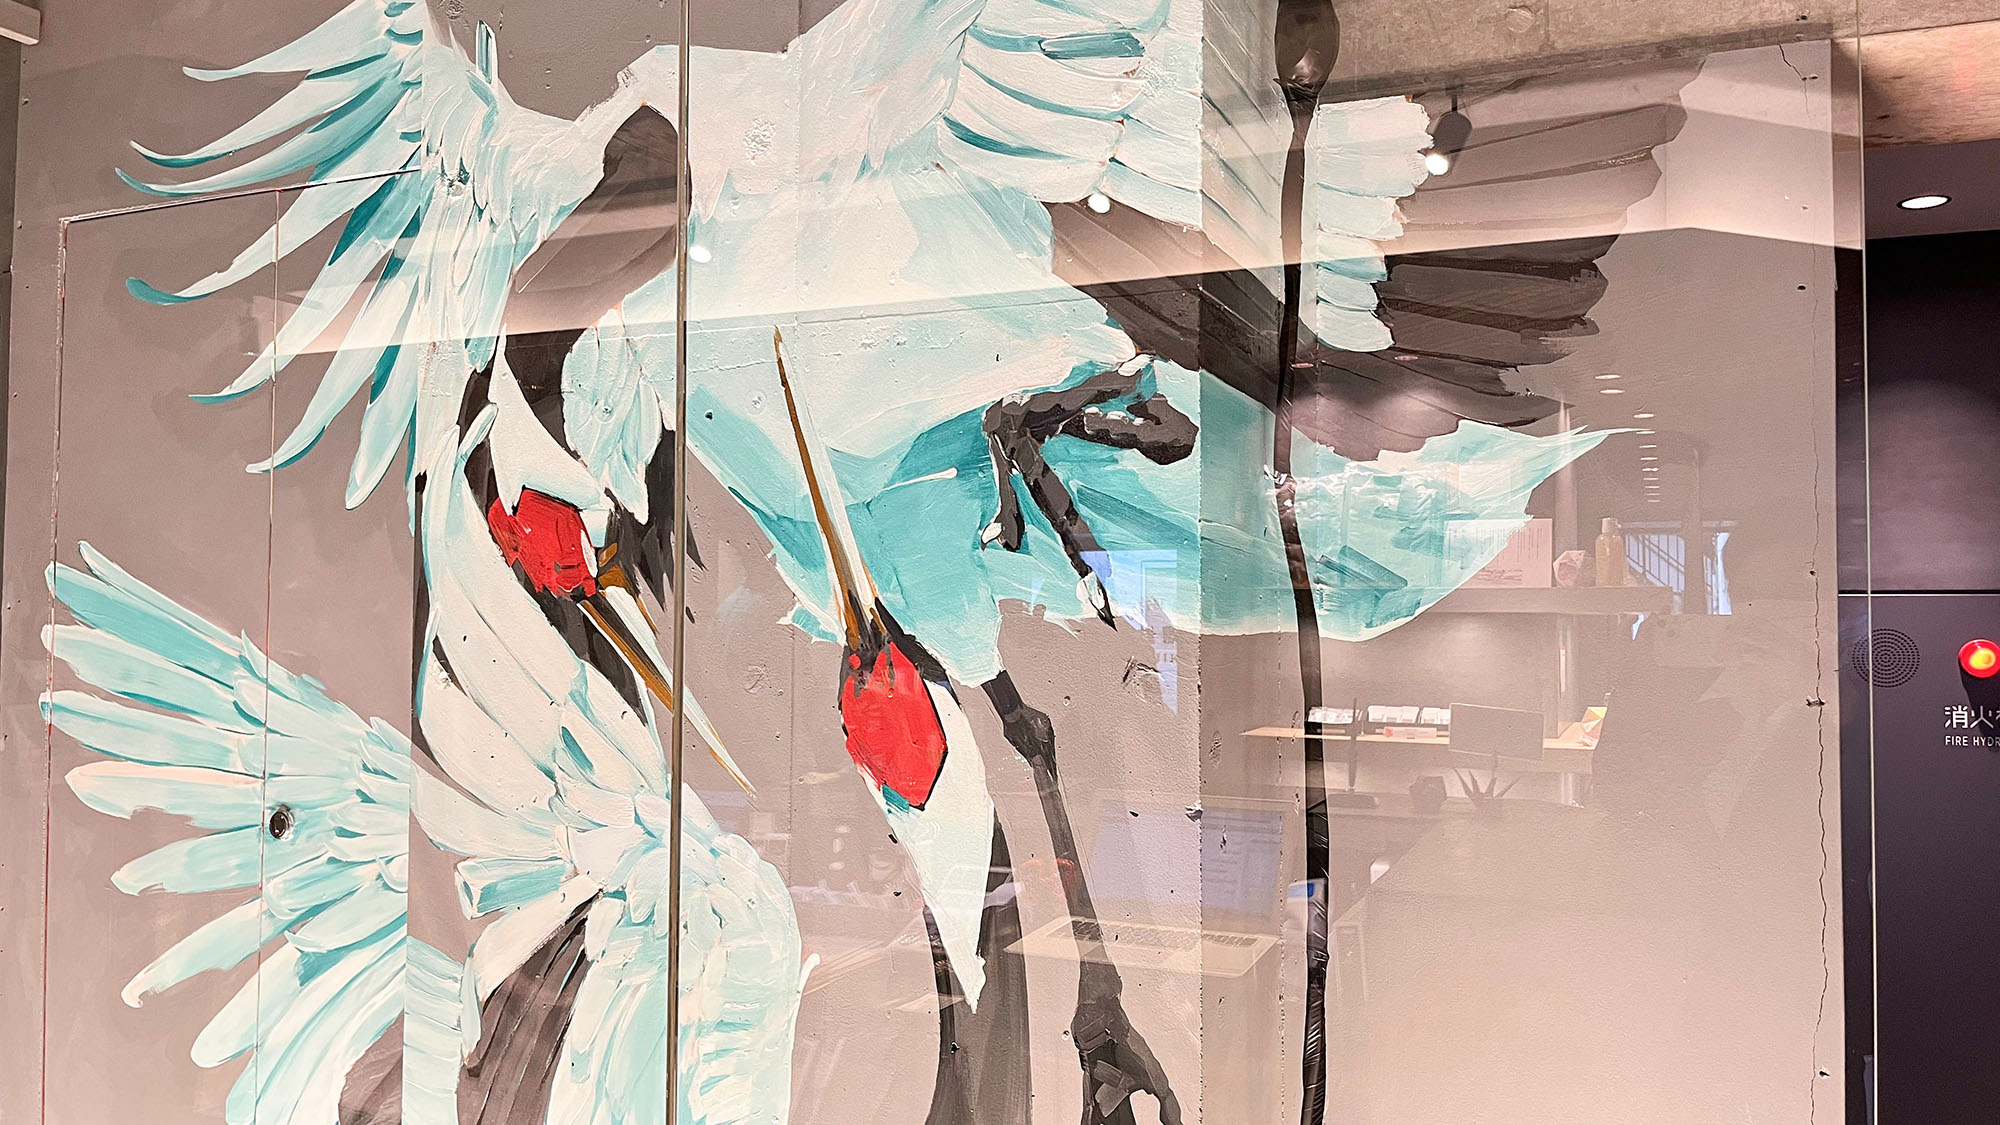 ・【フロント】壁にはシンボルマークの鶴が描かれています。思わず写真を撮りたくなる美しさ！